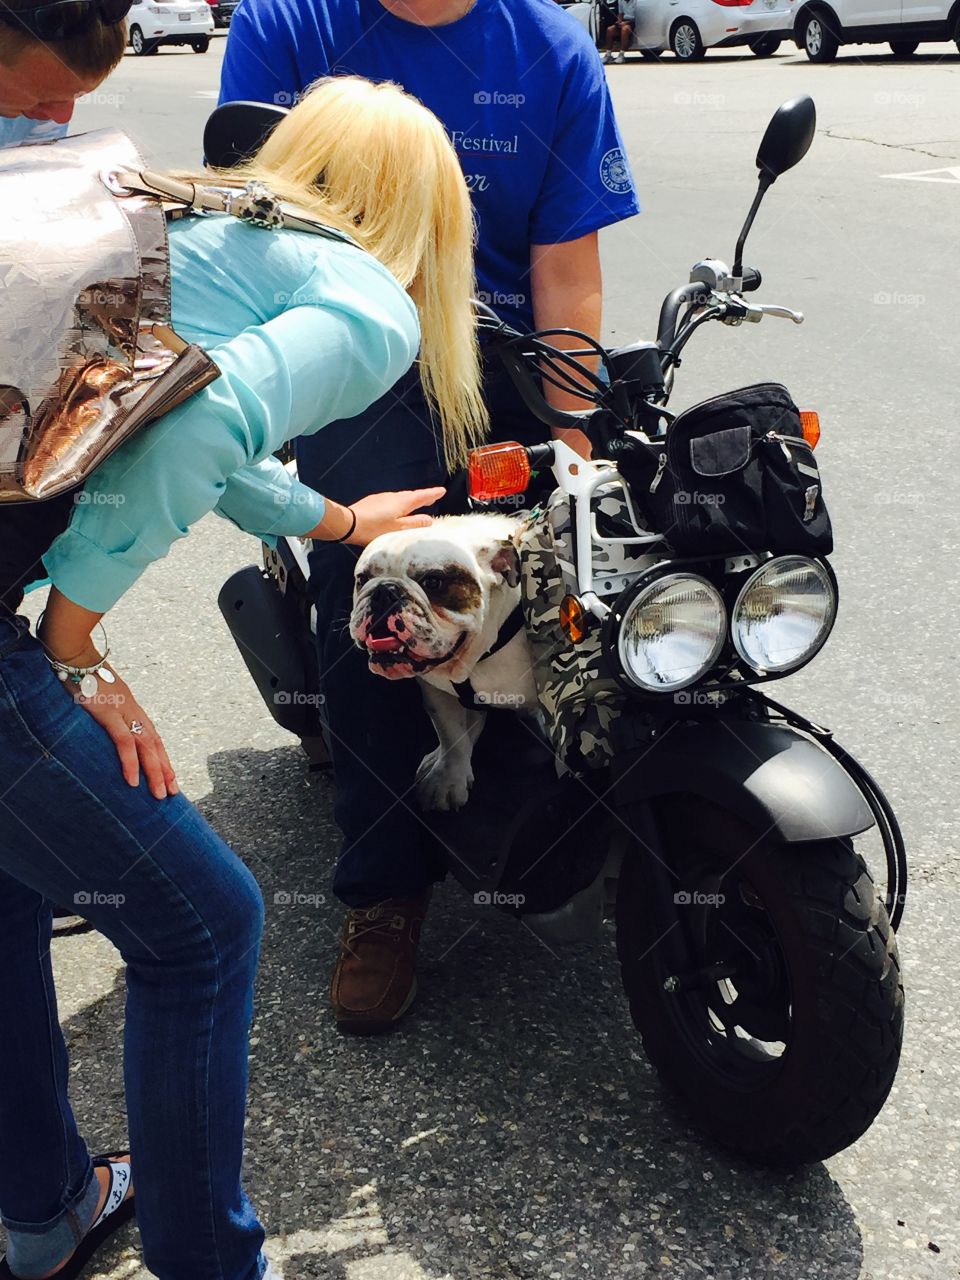 English bulldog riding a motorcycle 